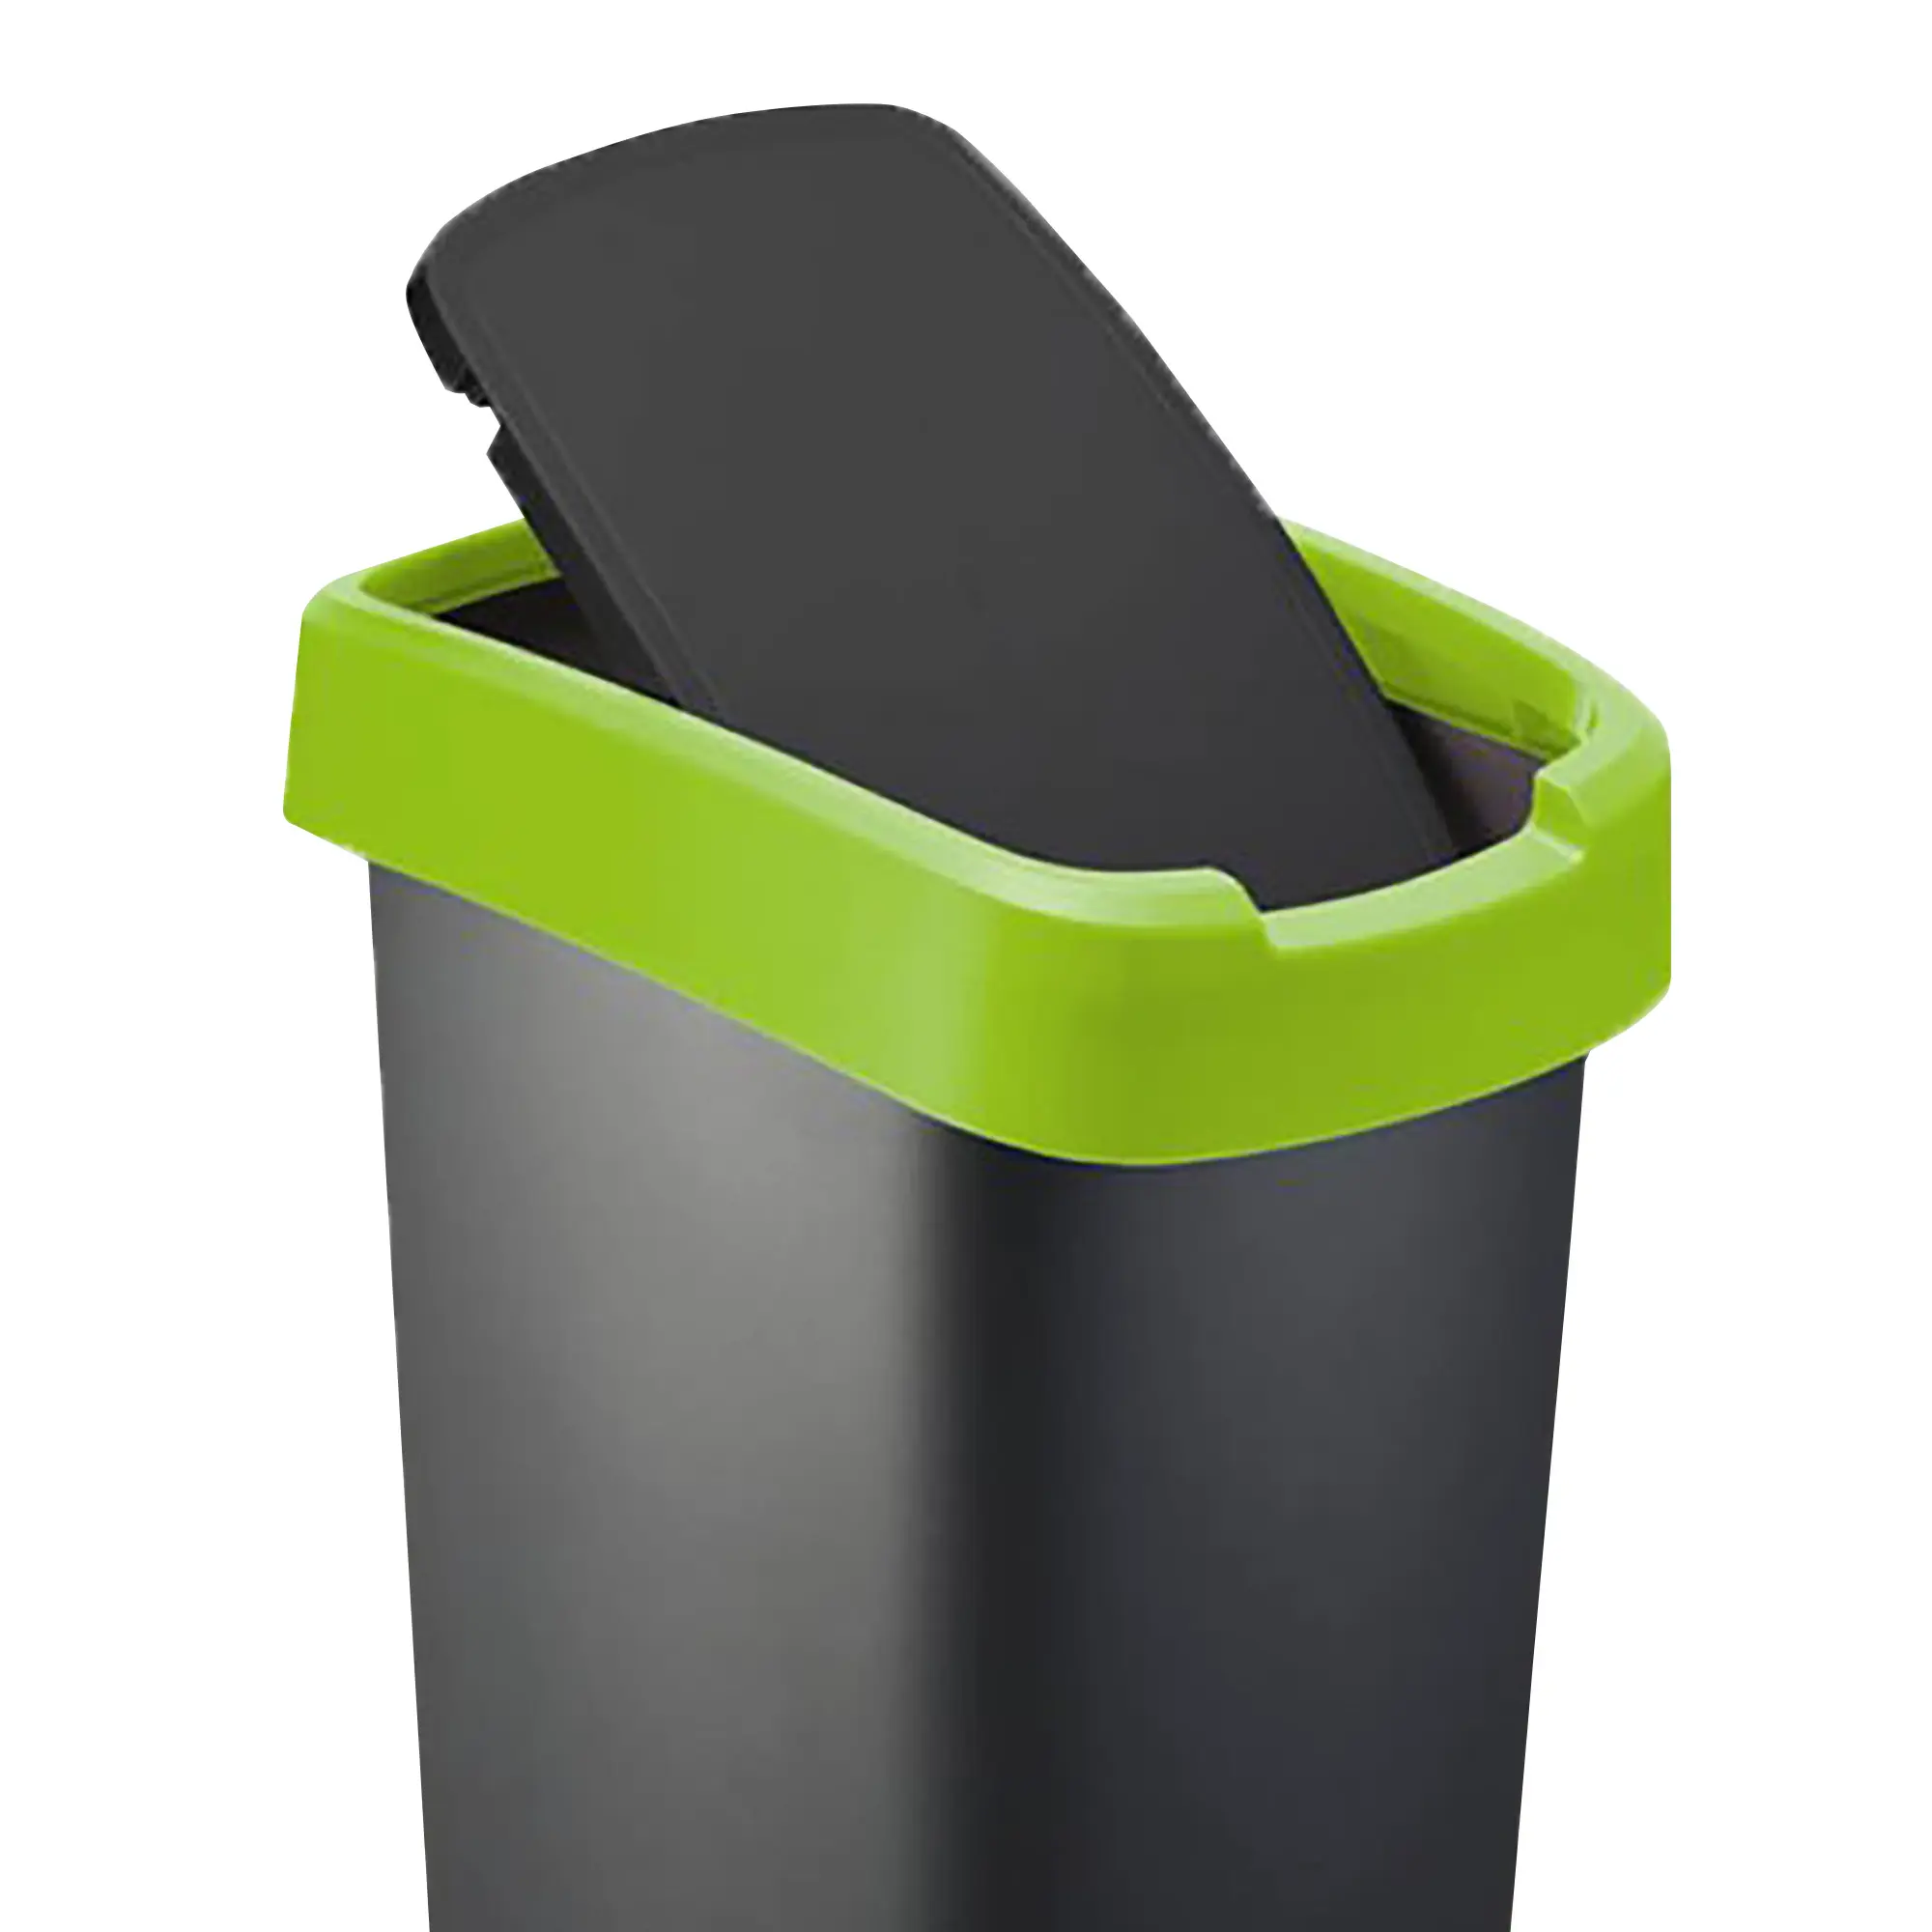 RothoPro Twist Abfallbehälter 25 Liter schwarz/grün Schwingfunktion 59135414